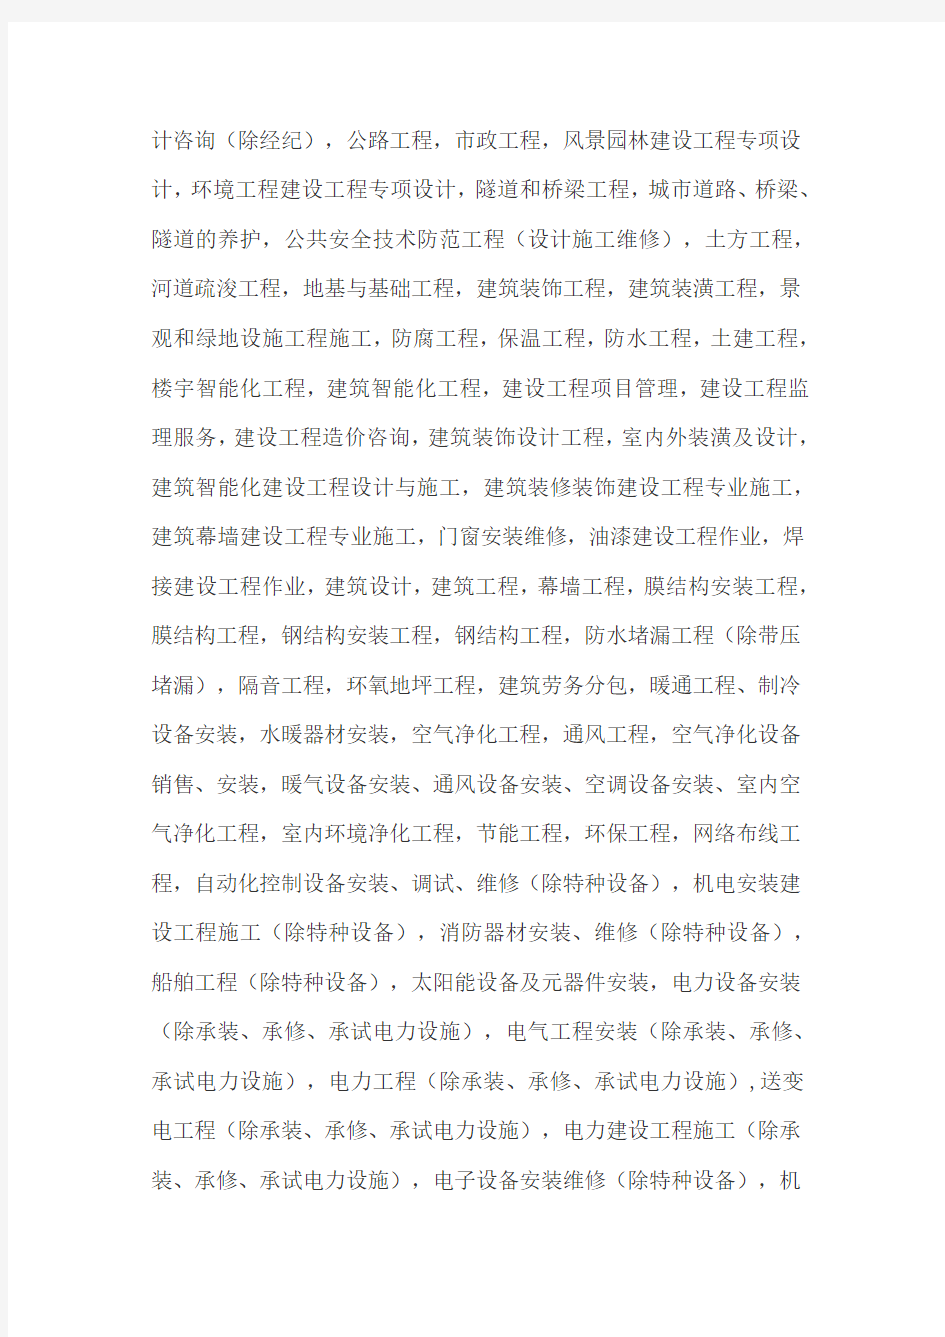 上海注册公司经营范围参考2016年最新版